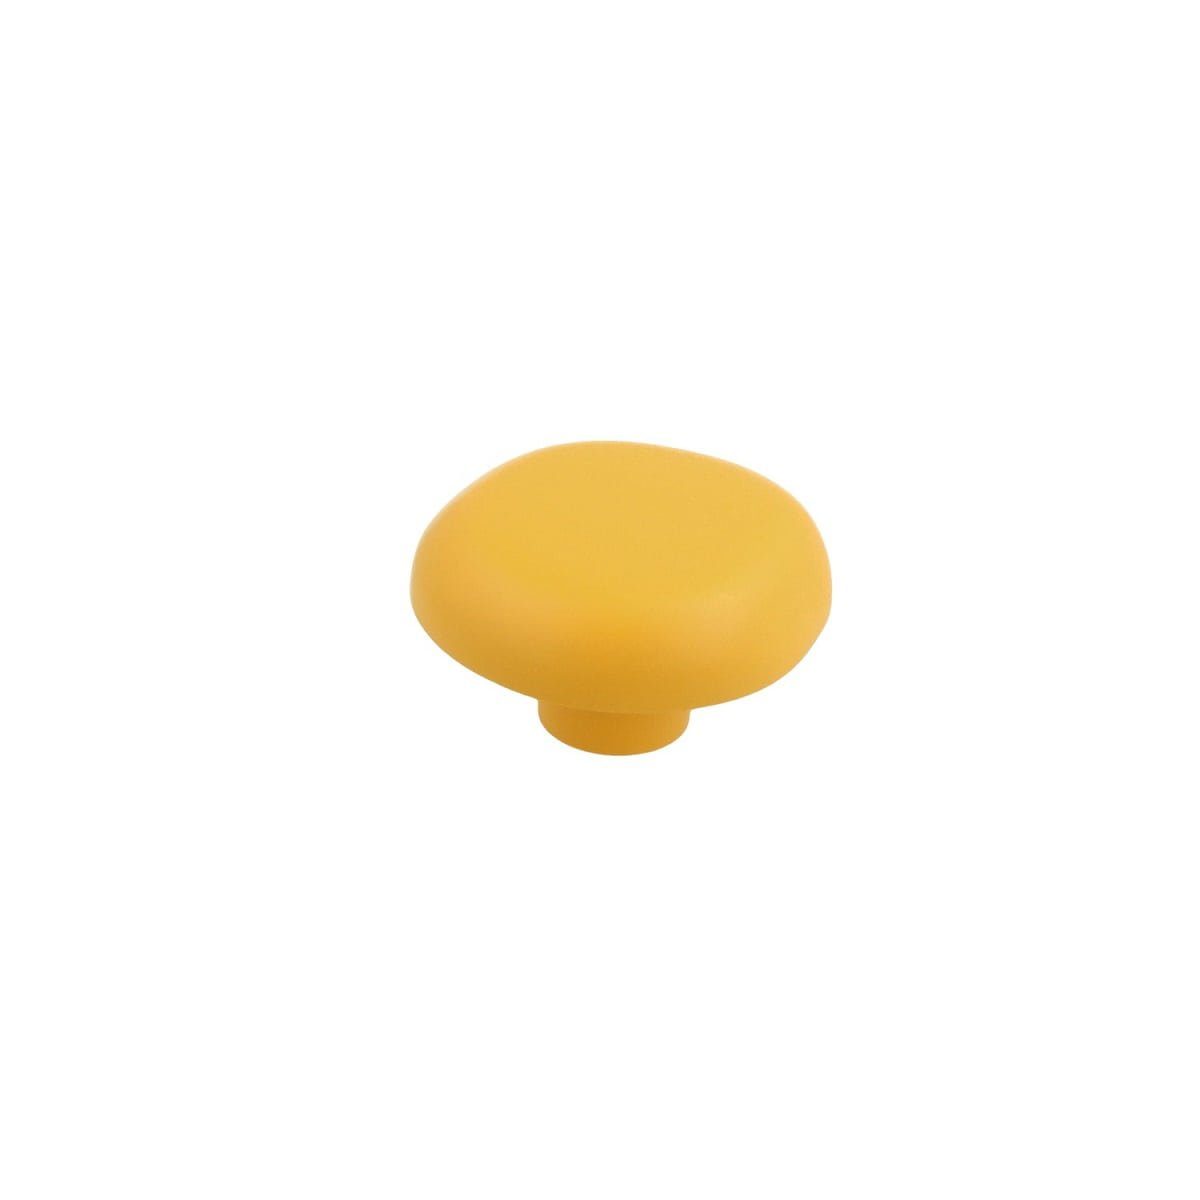 Im Angebot zu einem supergünstigen Preis! MS Beschläge Kinderzimmerknopf Kommodenk Pilz Möbelknopf Gelber Schrankknopf Türbeschlag Modell